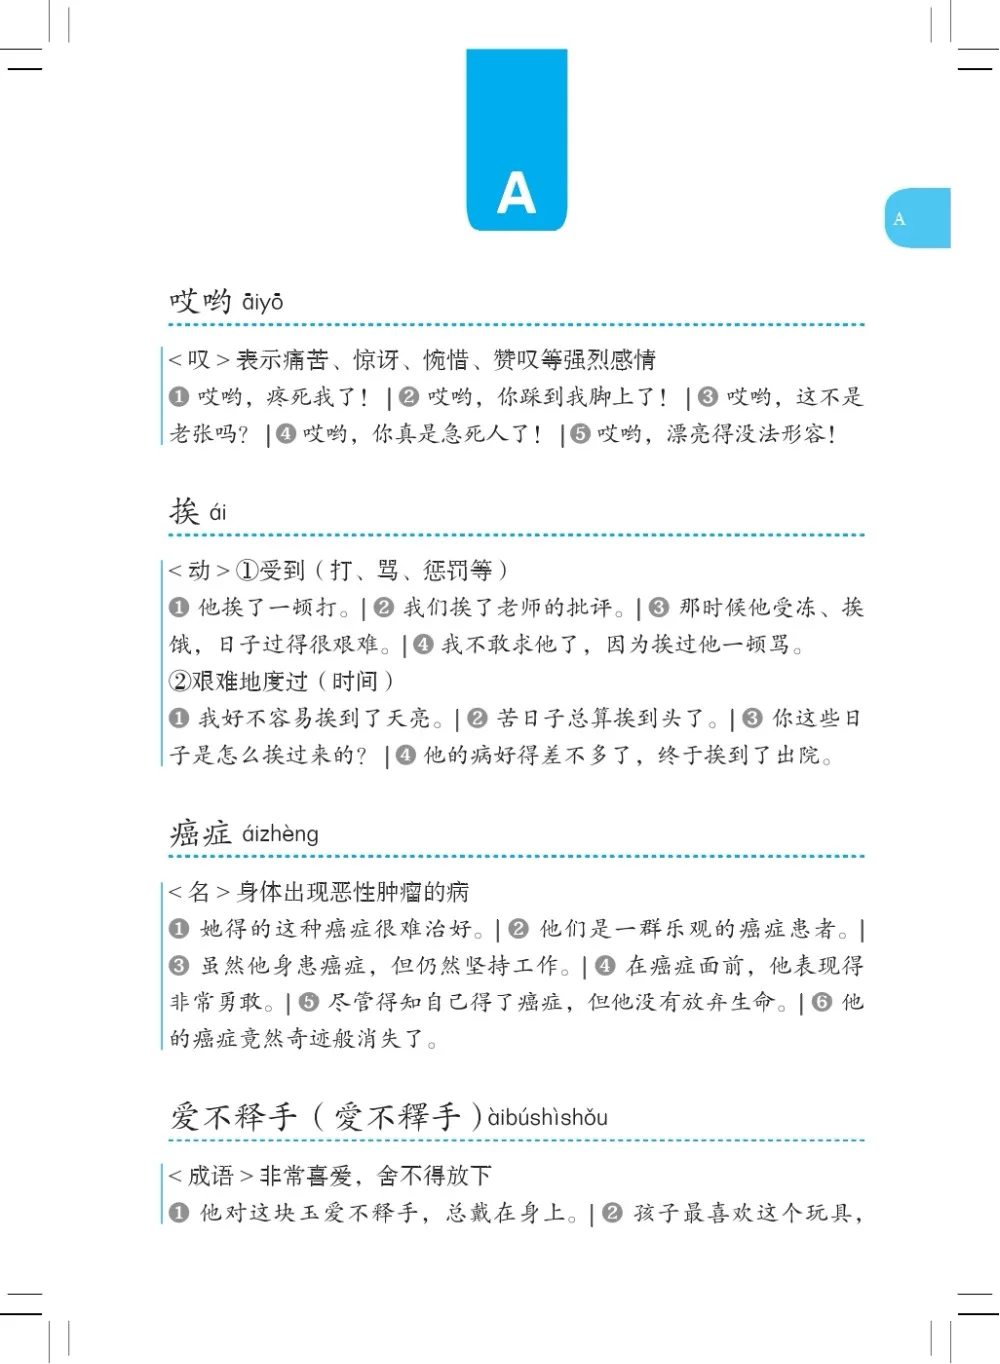 6) teste de proficiência chinês nível 6